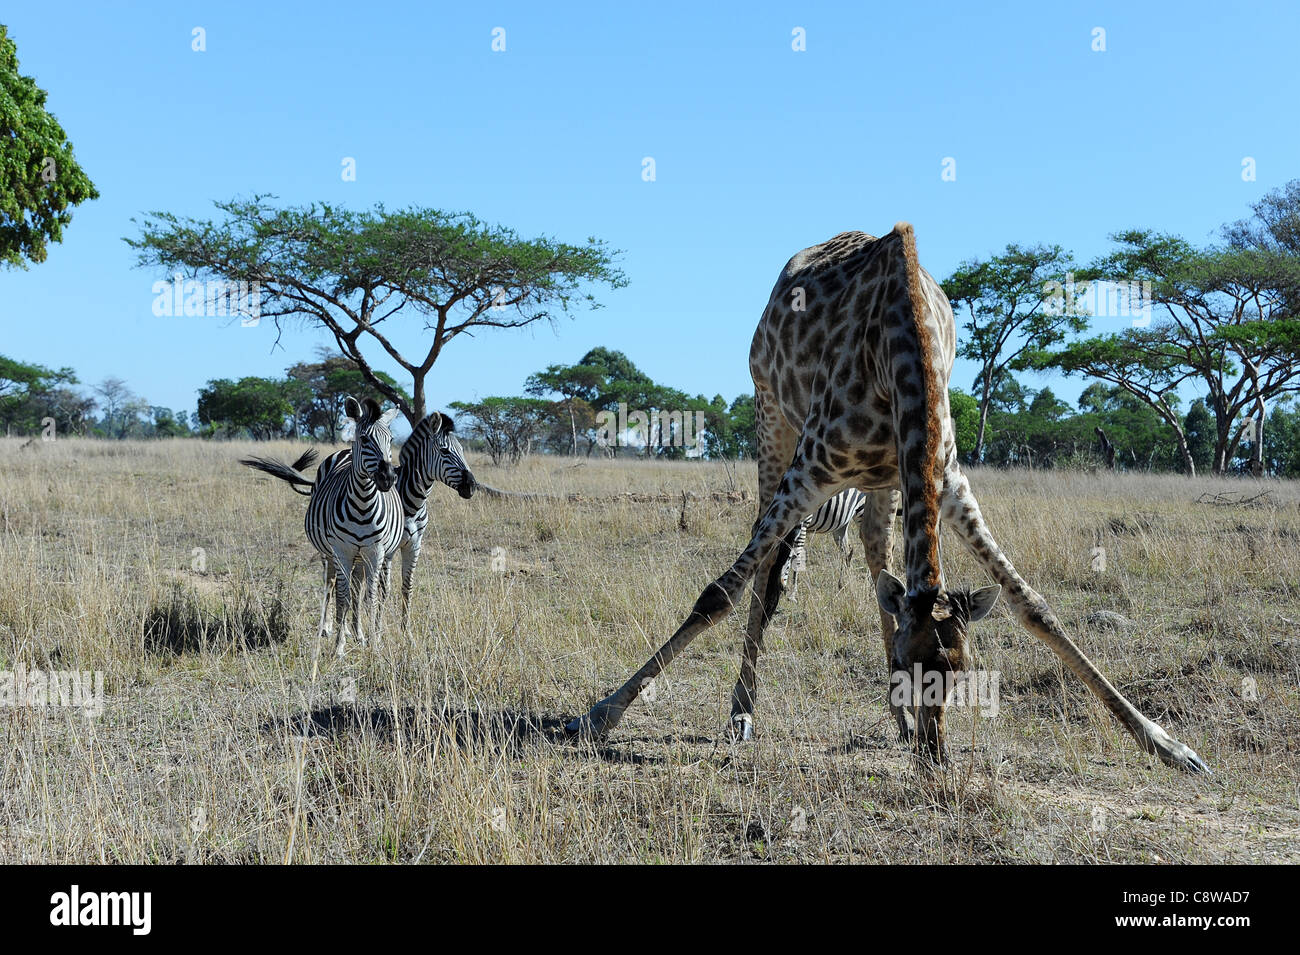 Giraffe (Giraffa camelopardalis) and zebras in the bush at Imire Safari Ranch, Zimbabwe. Stock Photo